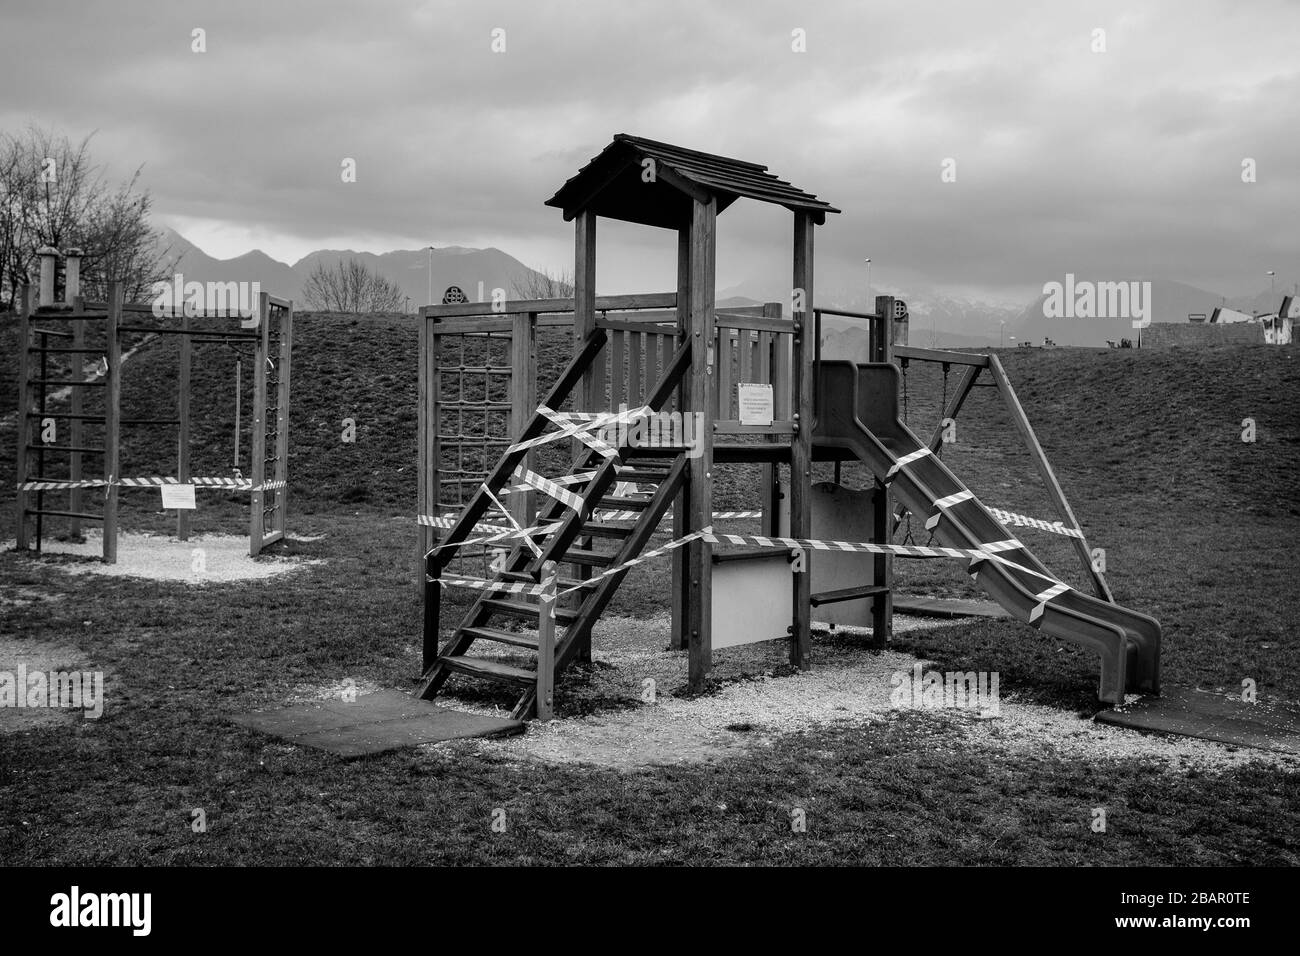 Kranj, Slowenien, 21. März 2020: Ein geschlossener Spielplatz, eine der frühen Sicherheitsmaßnahmen, während des Coronavirus-Ausbruchs landesweit gesperrt. Stockfoto